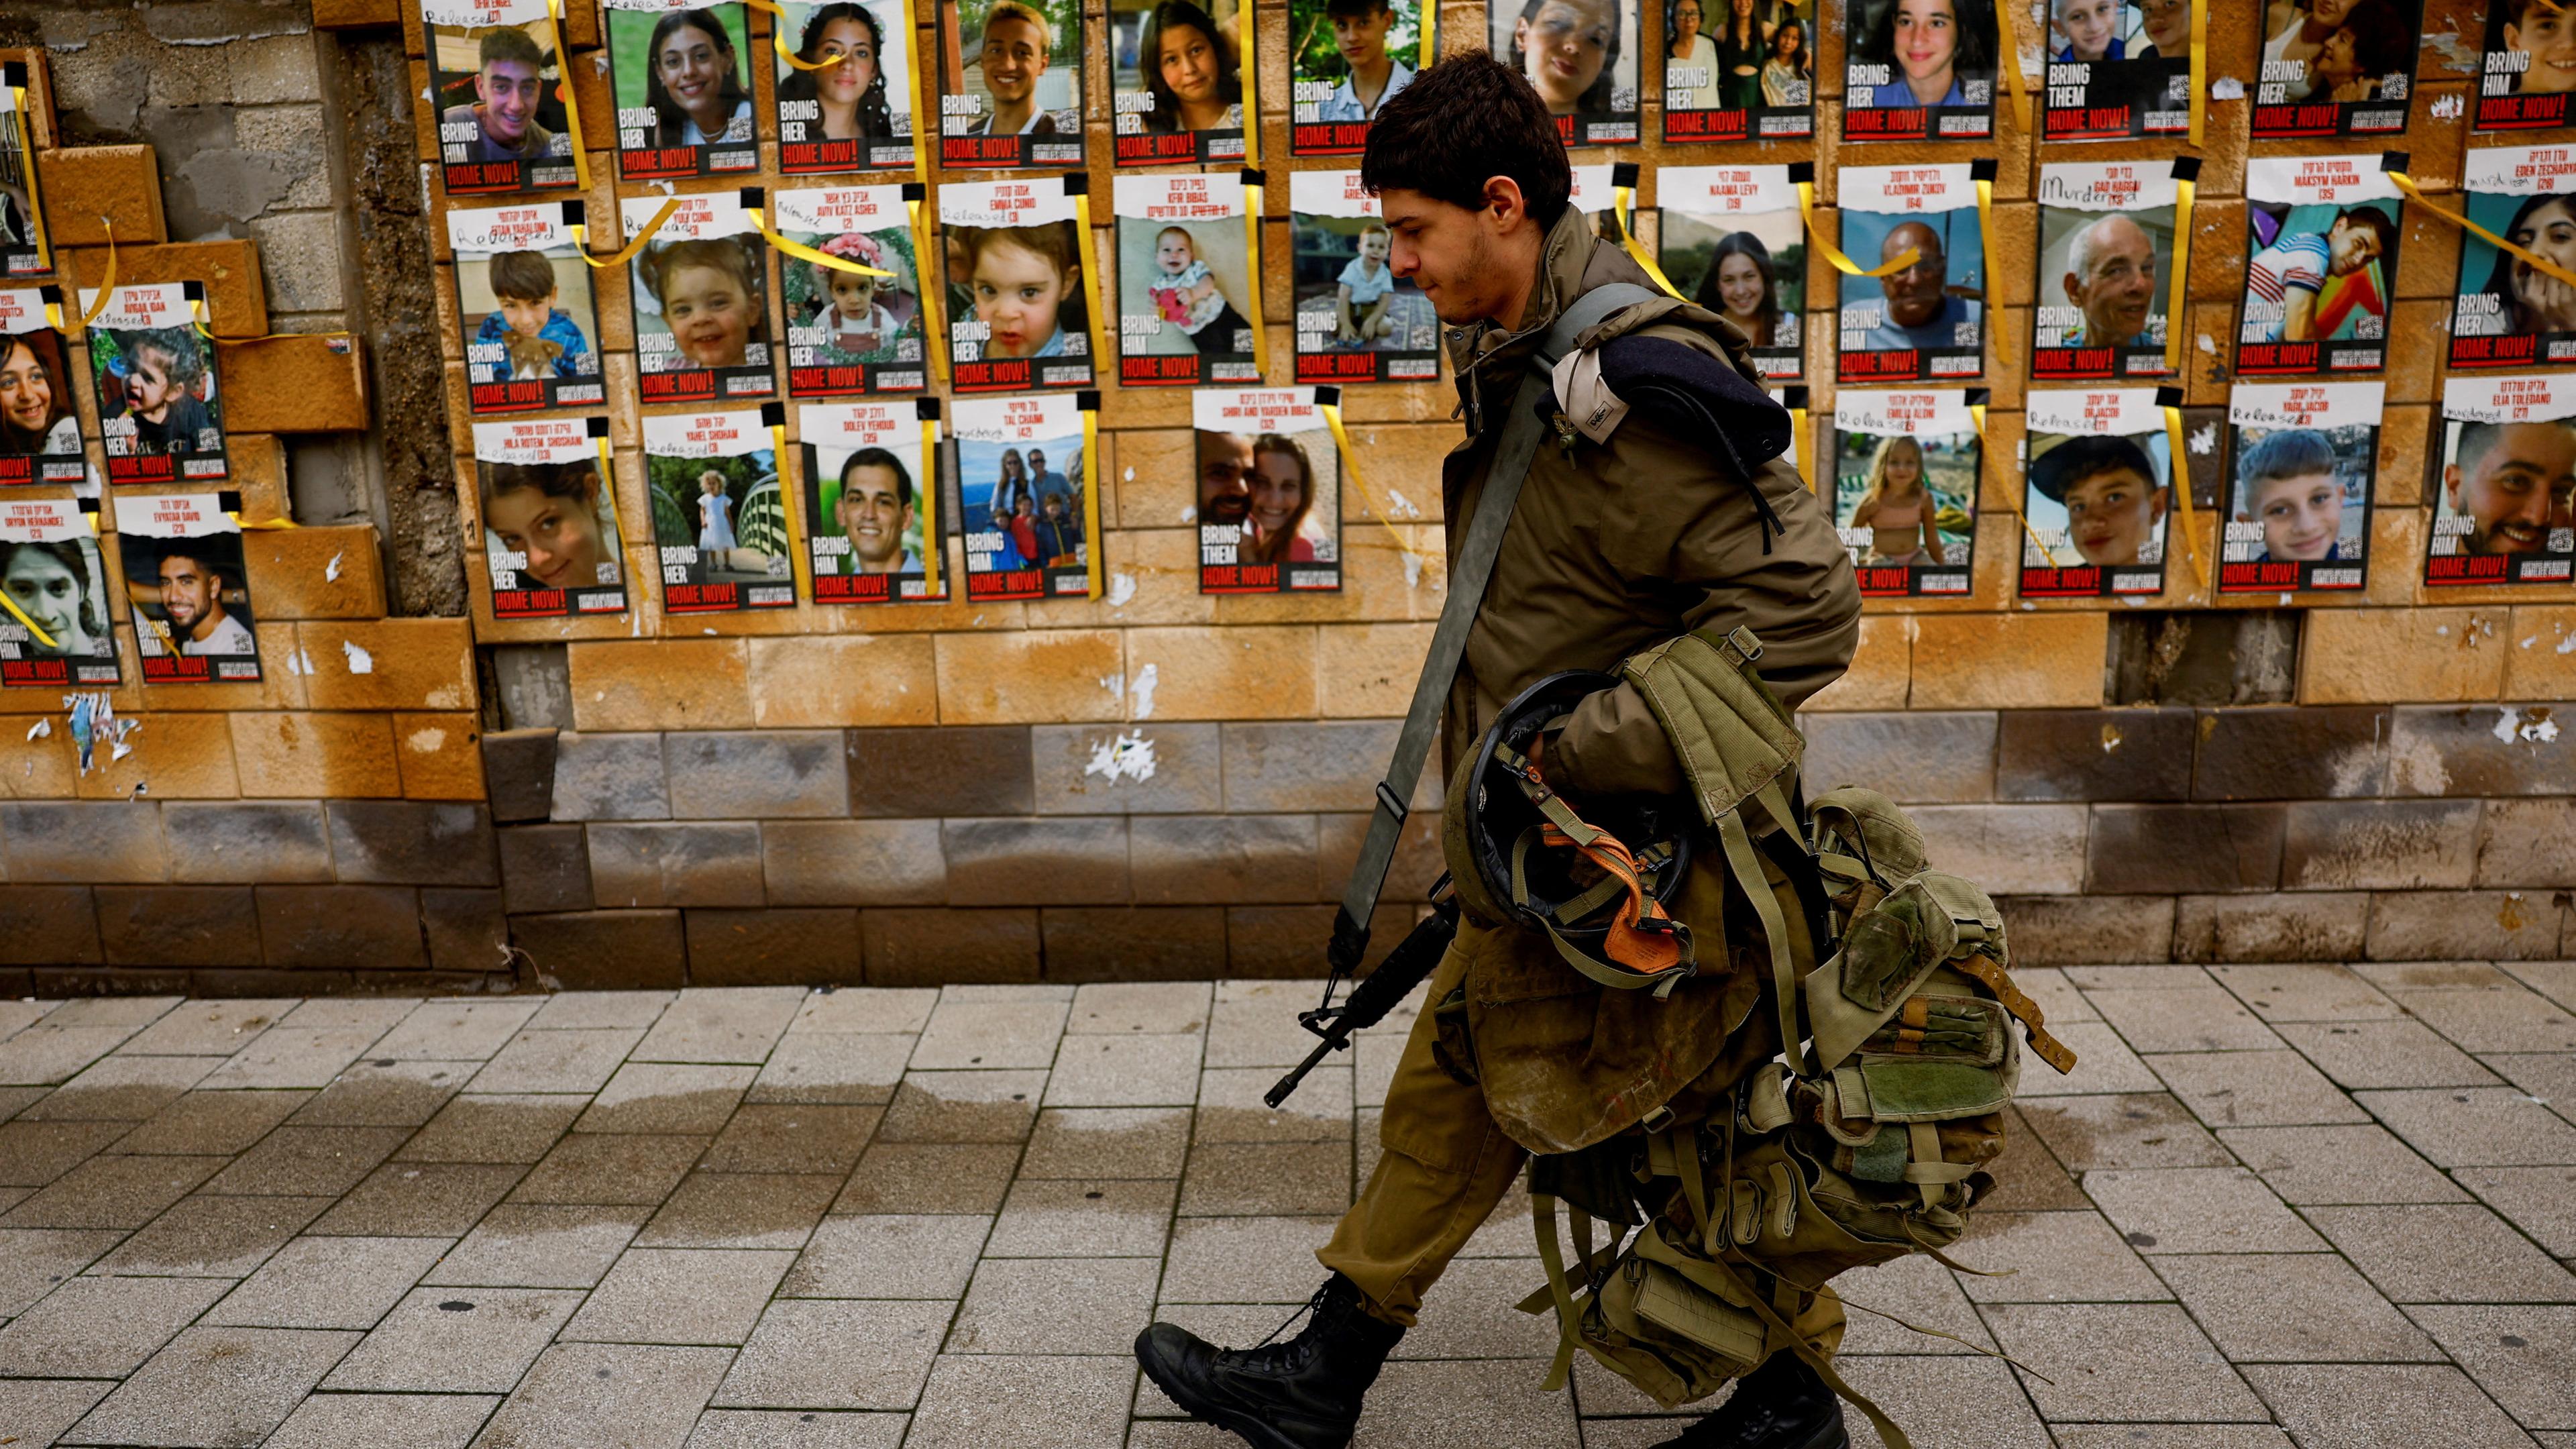 Ein israelischer SOldat läuft an einer Wand vorbei, an der mehrere Plakate mit Bilder der verschleppten Geiseln befässtigt sind.